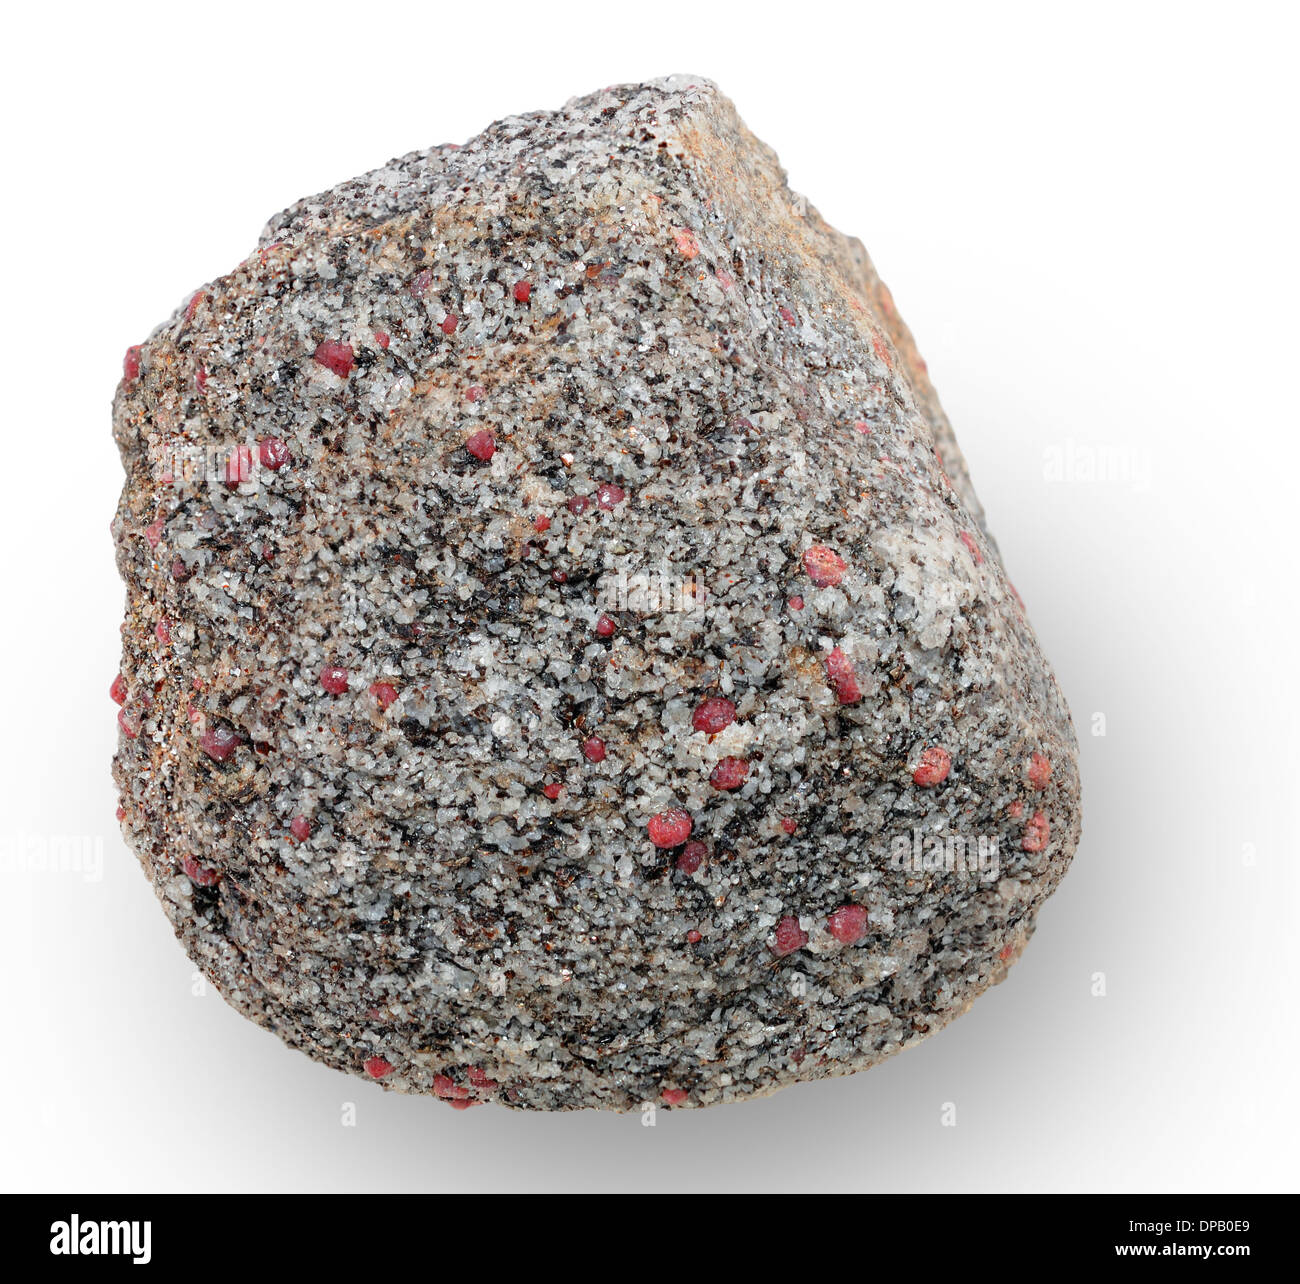 Mineral aggregate immagini e fotografie stock ad alta risoluzione - Alamy